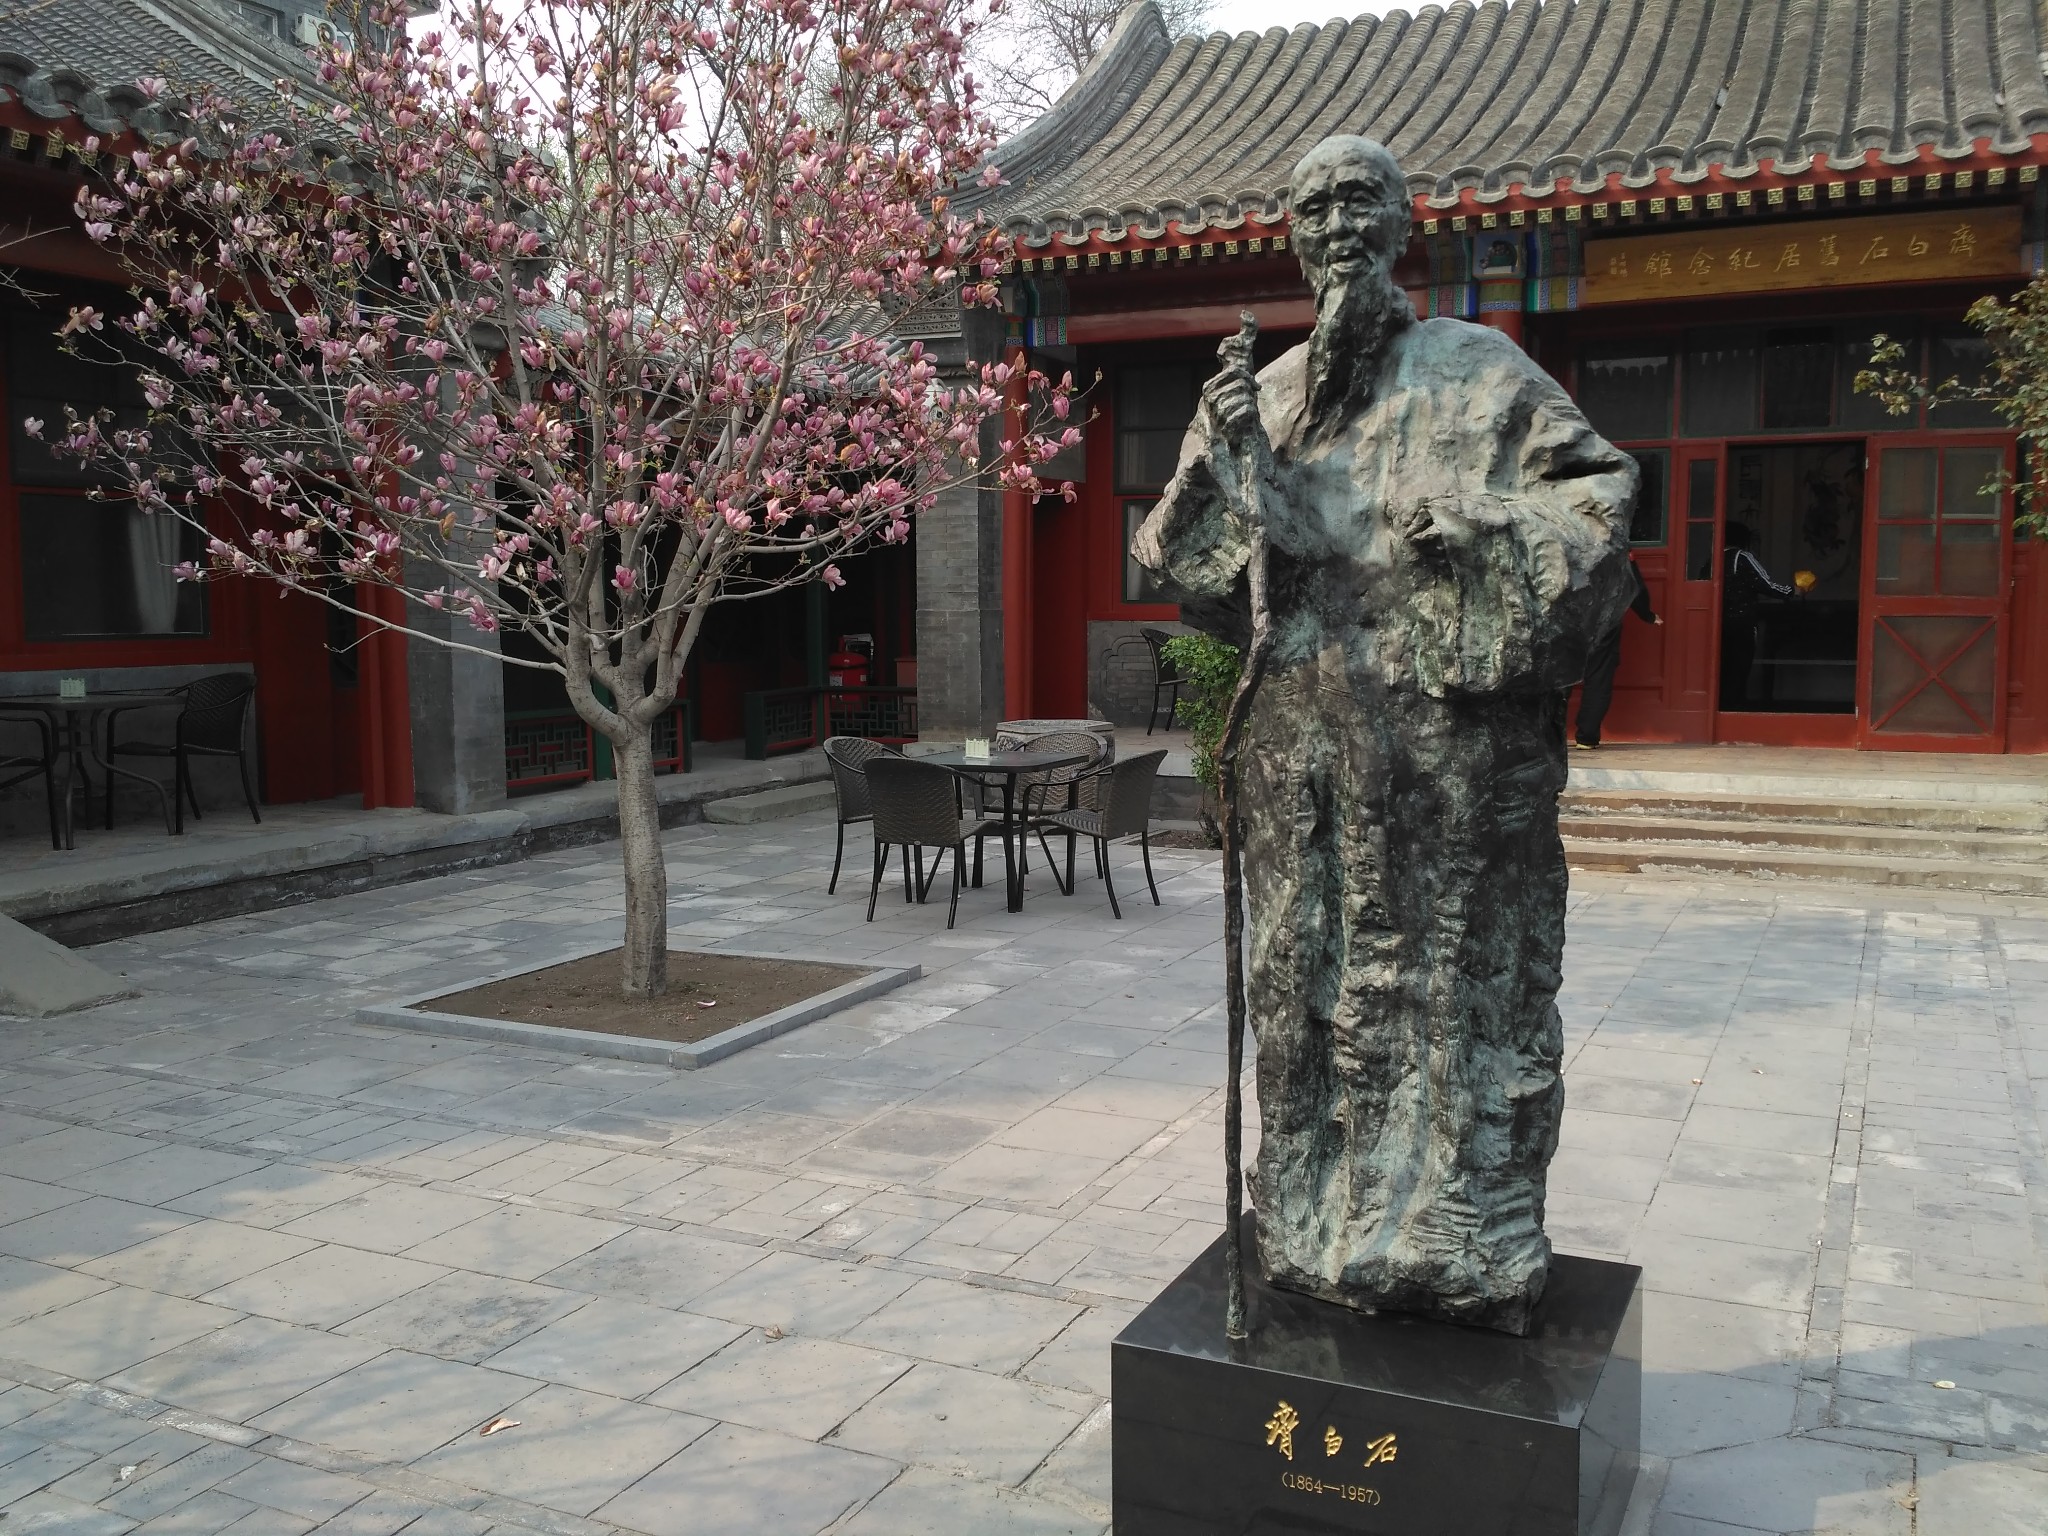 齐白石旧居纪念馆,北京自助游攻略 - 马蜂窝